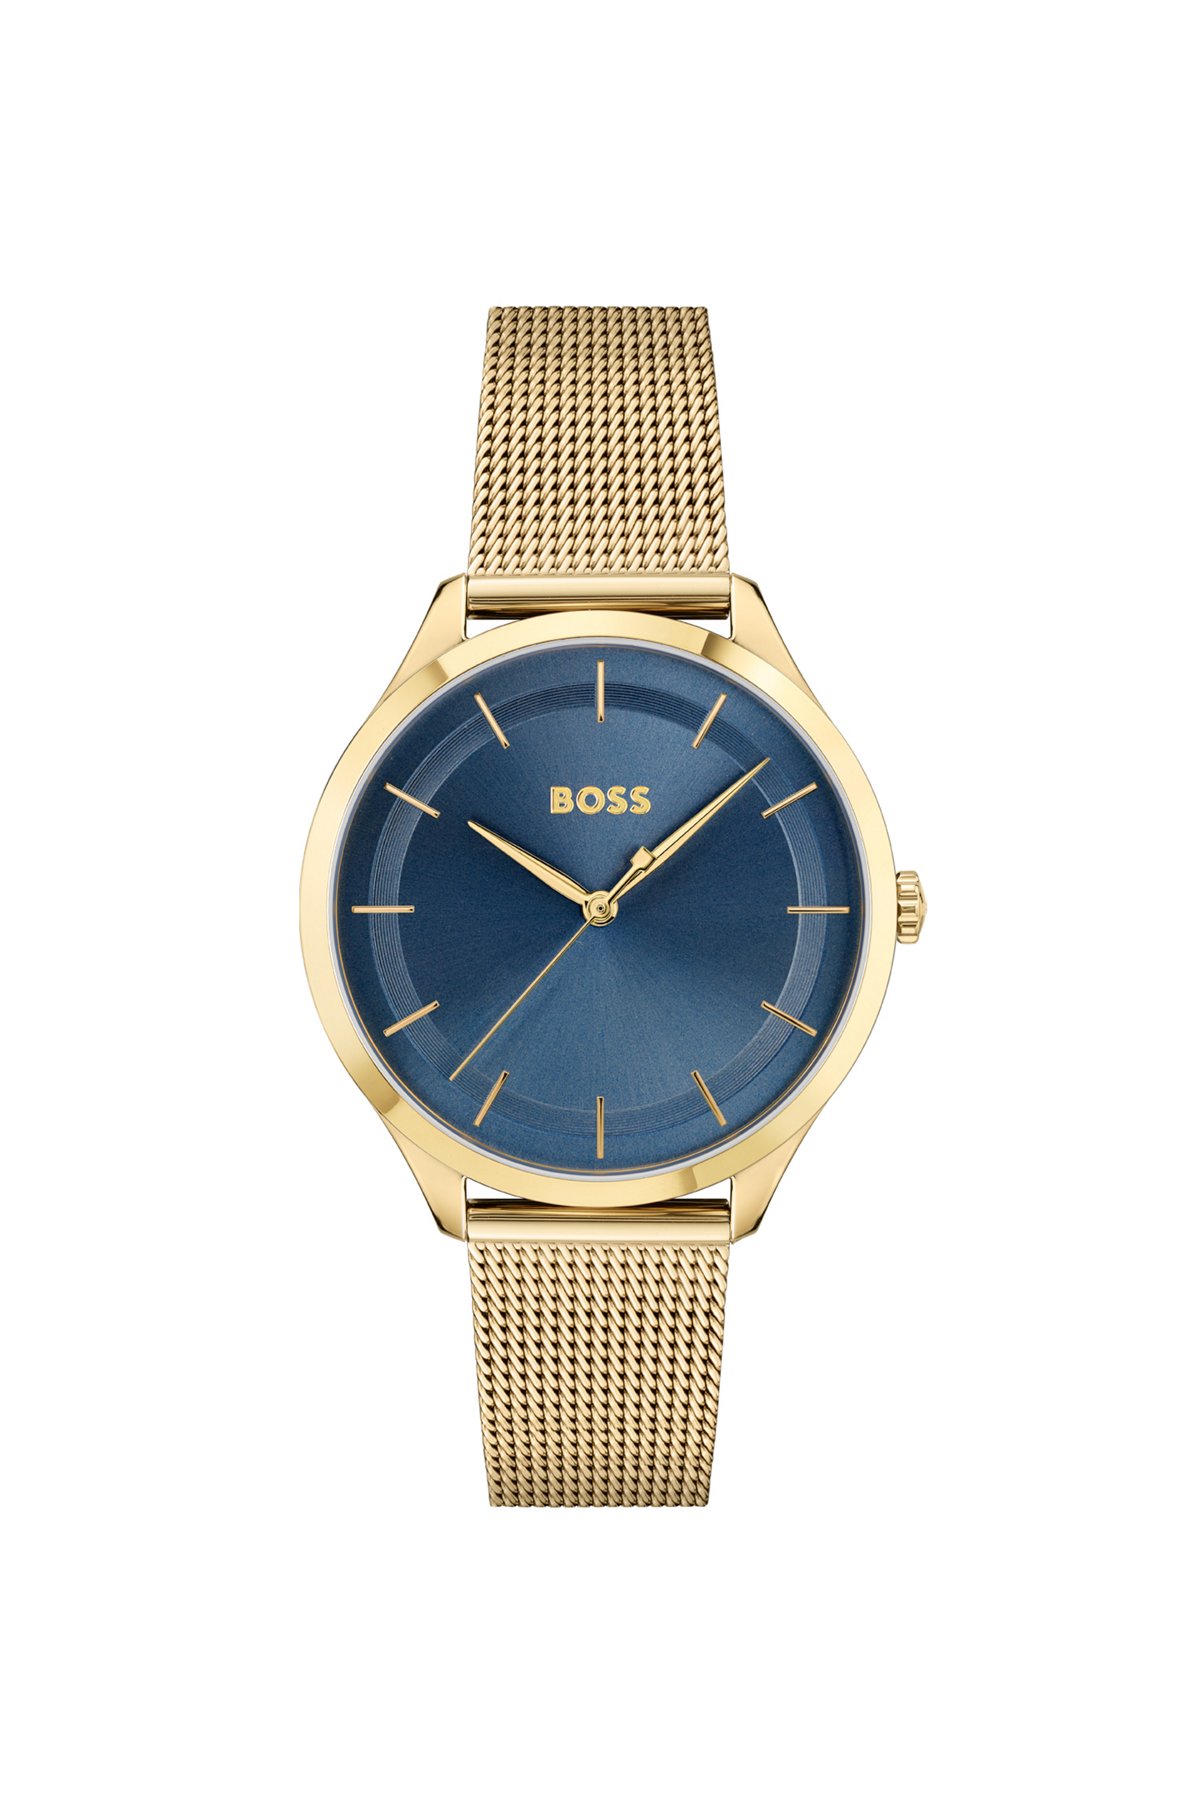 Goldfarbene Uhr mit Mesh-Armband und blauem Zifferblatt, Gold